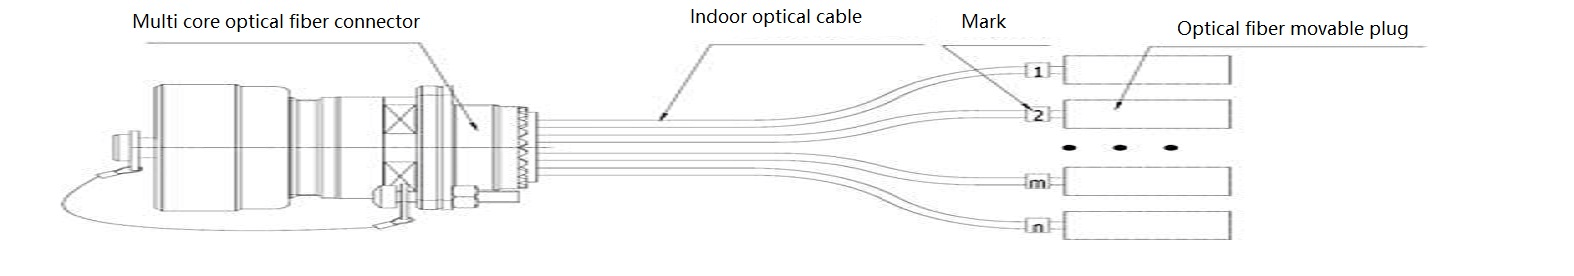 connettore tipo indoor preterminato struttura di assemblaggio del cavo in fibra